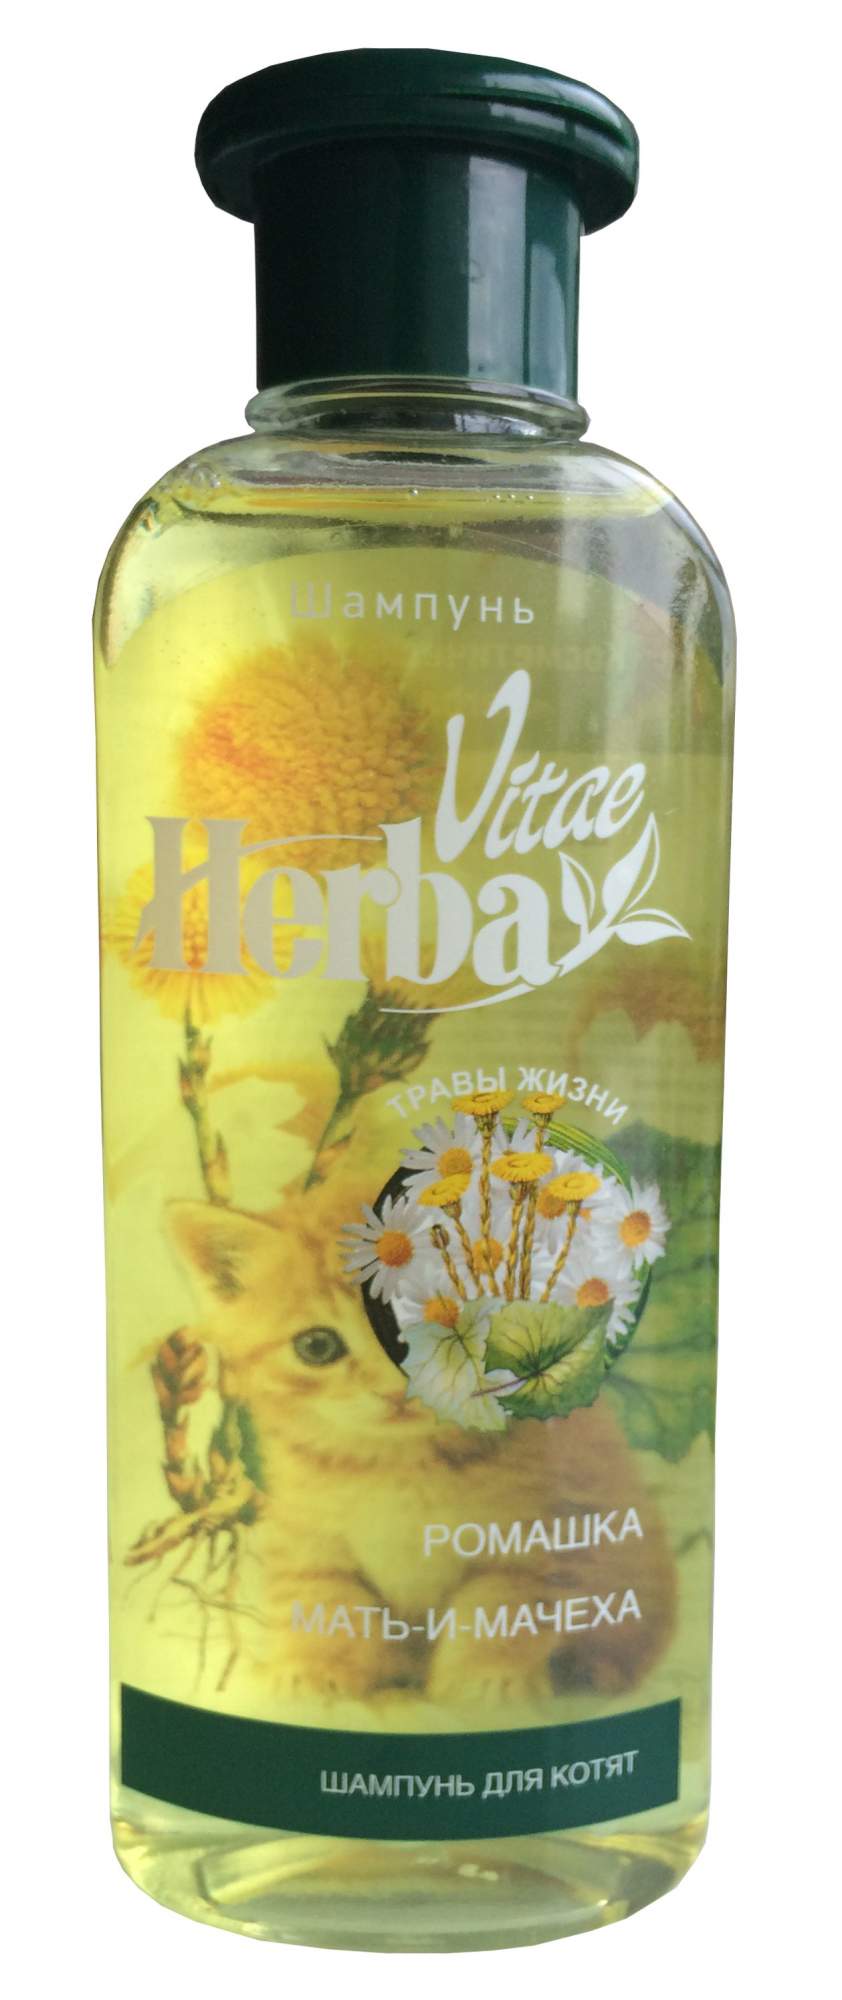 Шампунь для котят Herba Vitae, ромашка и мать-и-мачеха, травяной, 250 мл